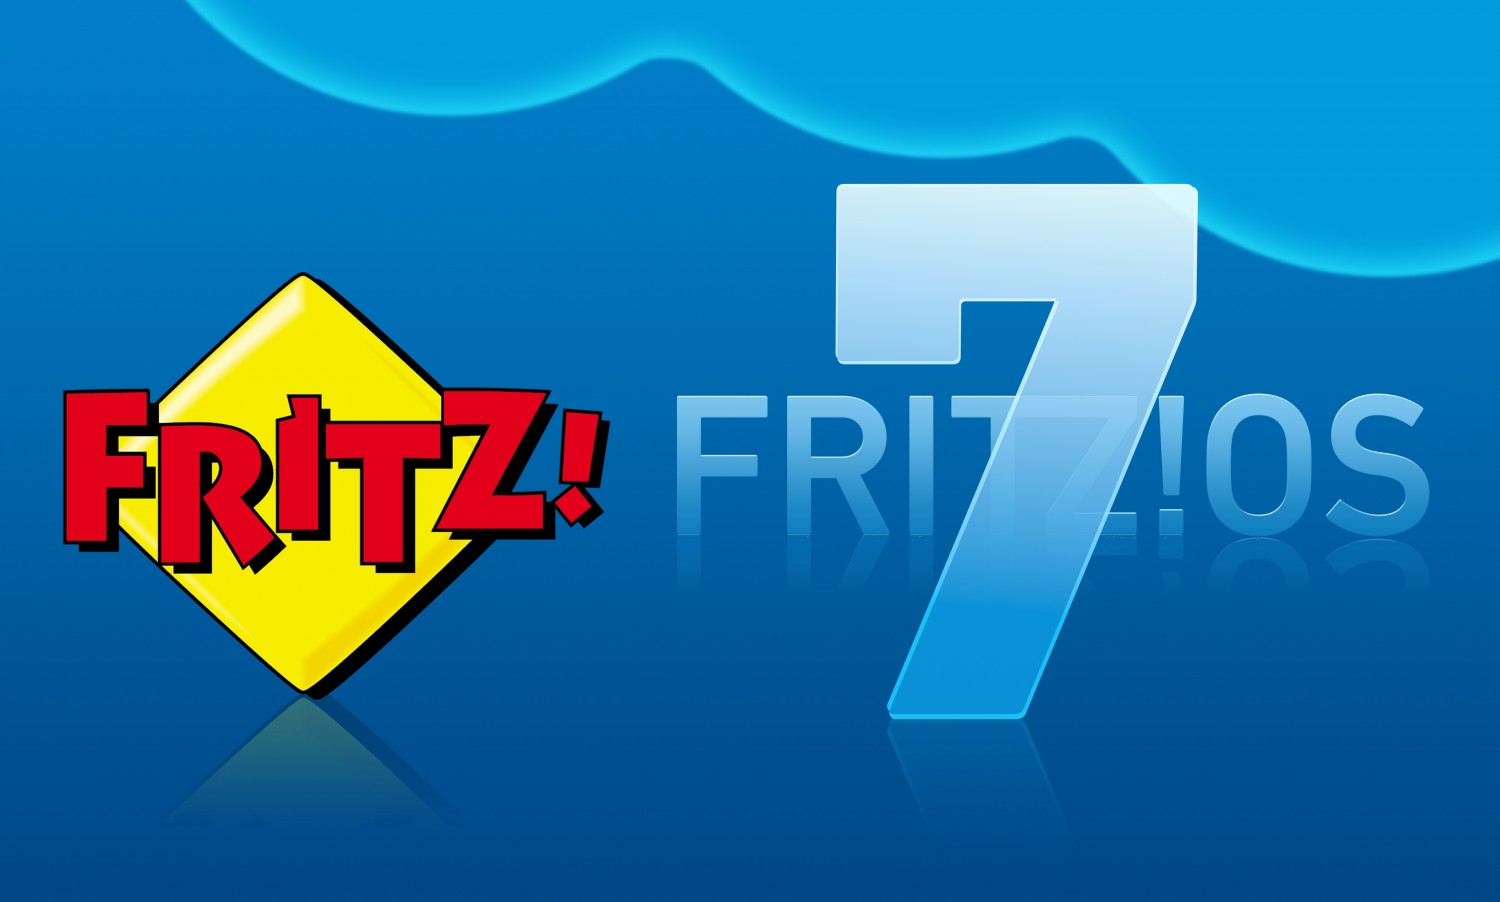 HiFi AVM mit neuem FRITZ!OS 7 - WLAN-Reichweite vergrößern - News, Bild 1